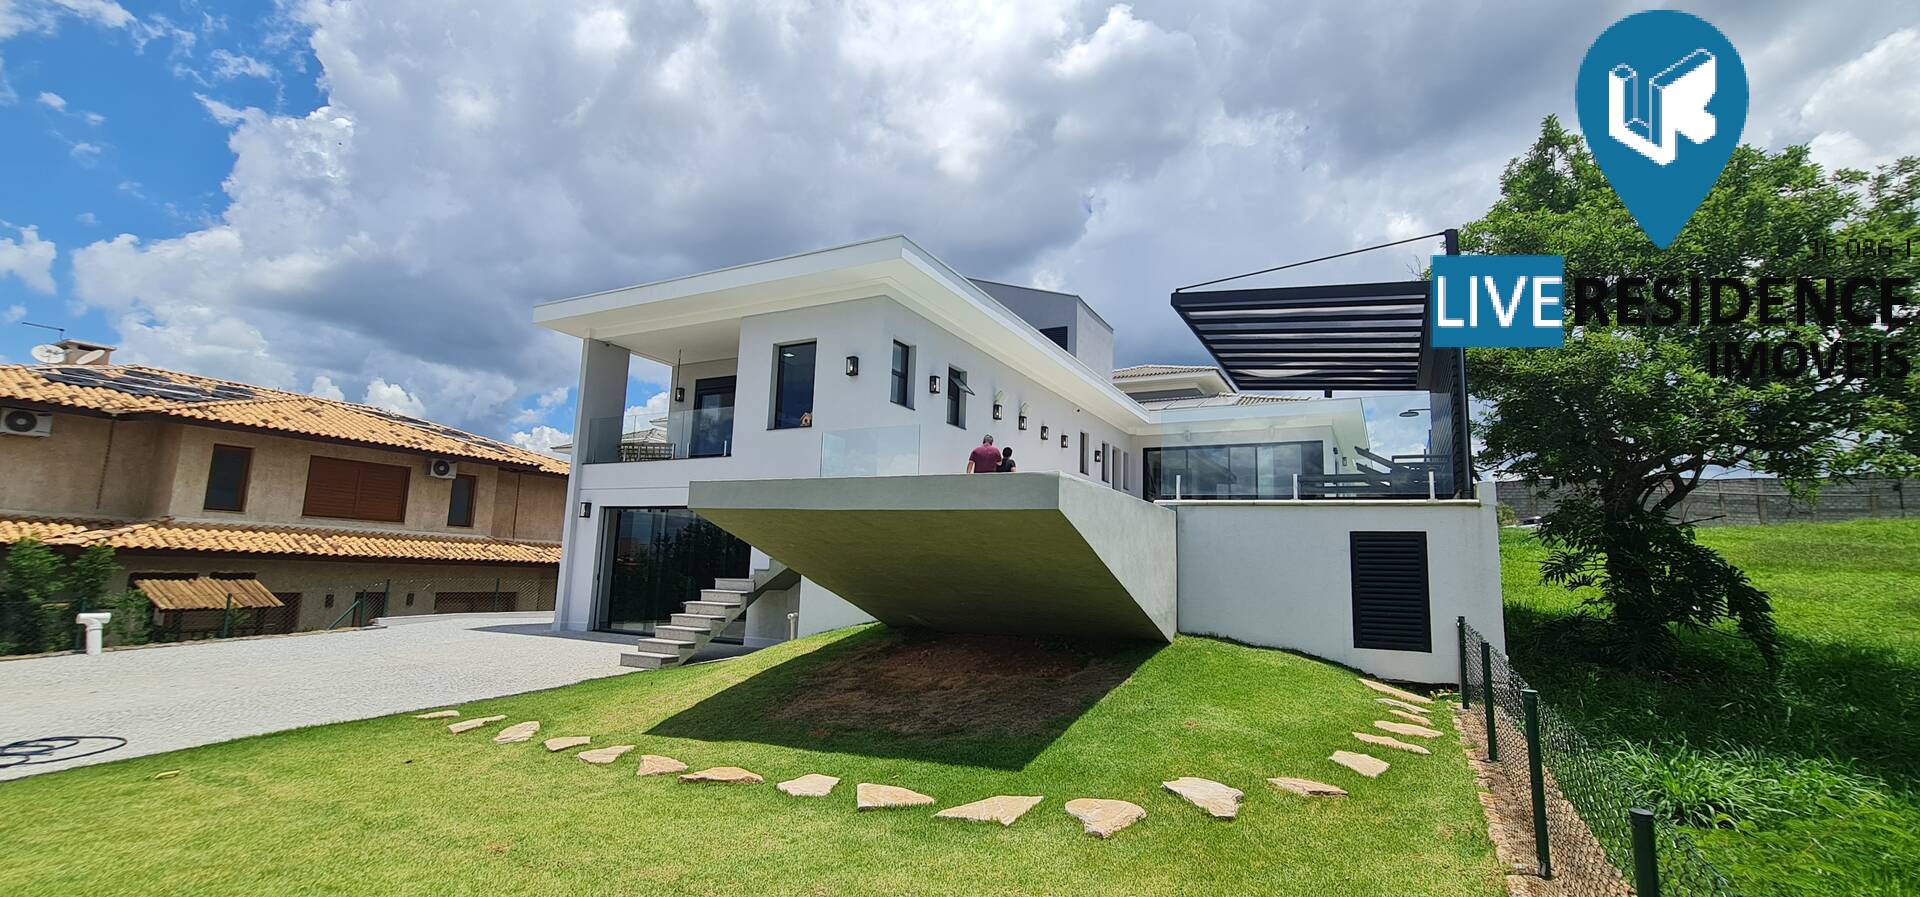 Condominio Village das Palmeiras, Itatiba - Venda Live Residence